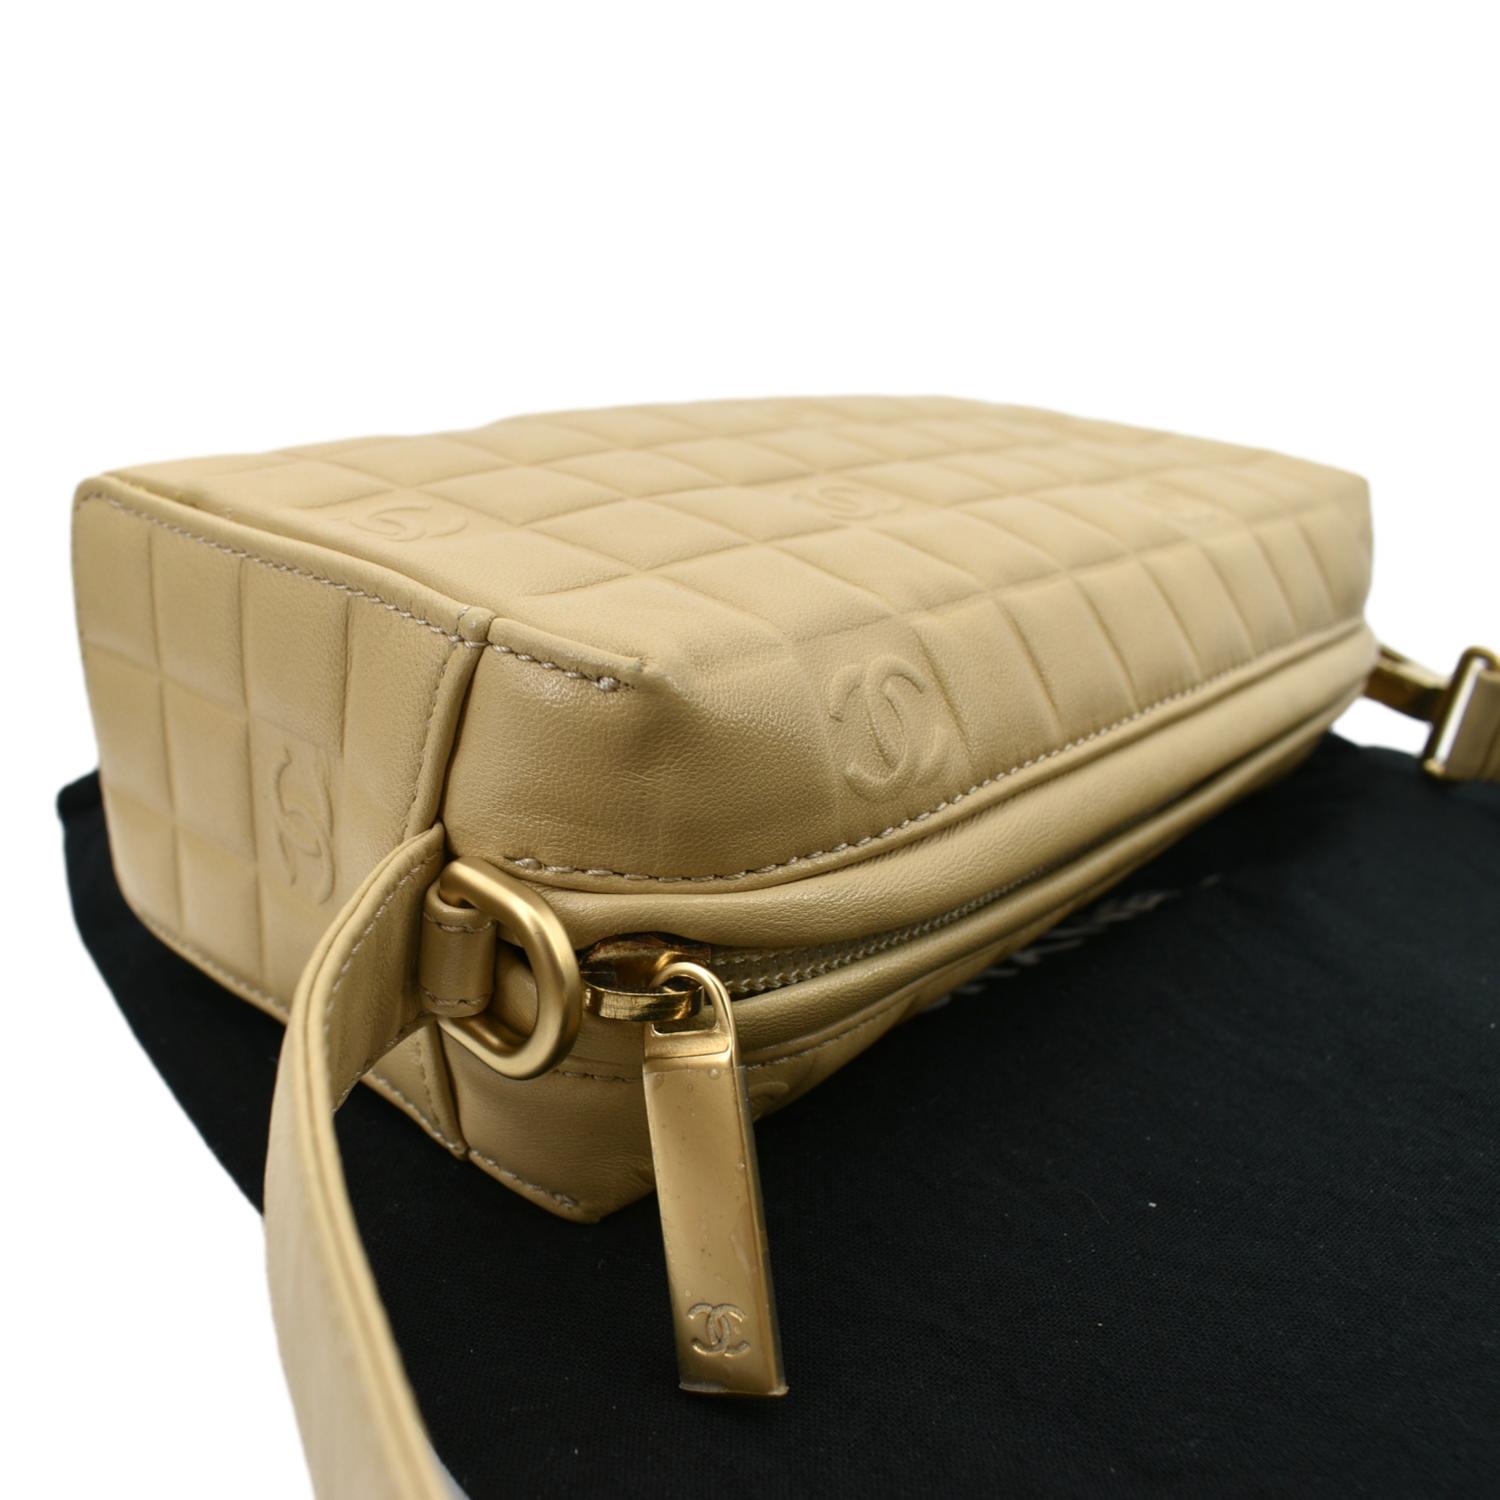 Chanel Chocolate Bar Leather Handbag